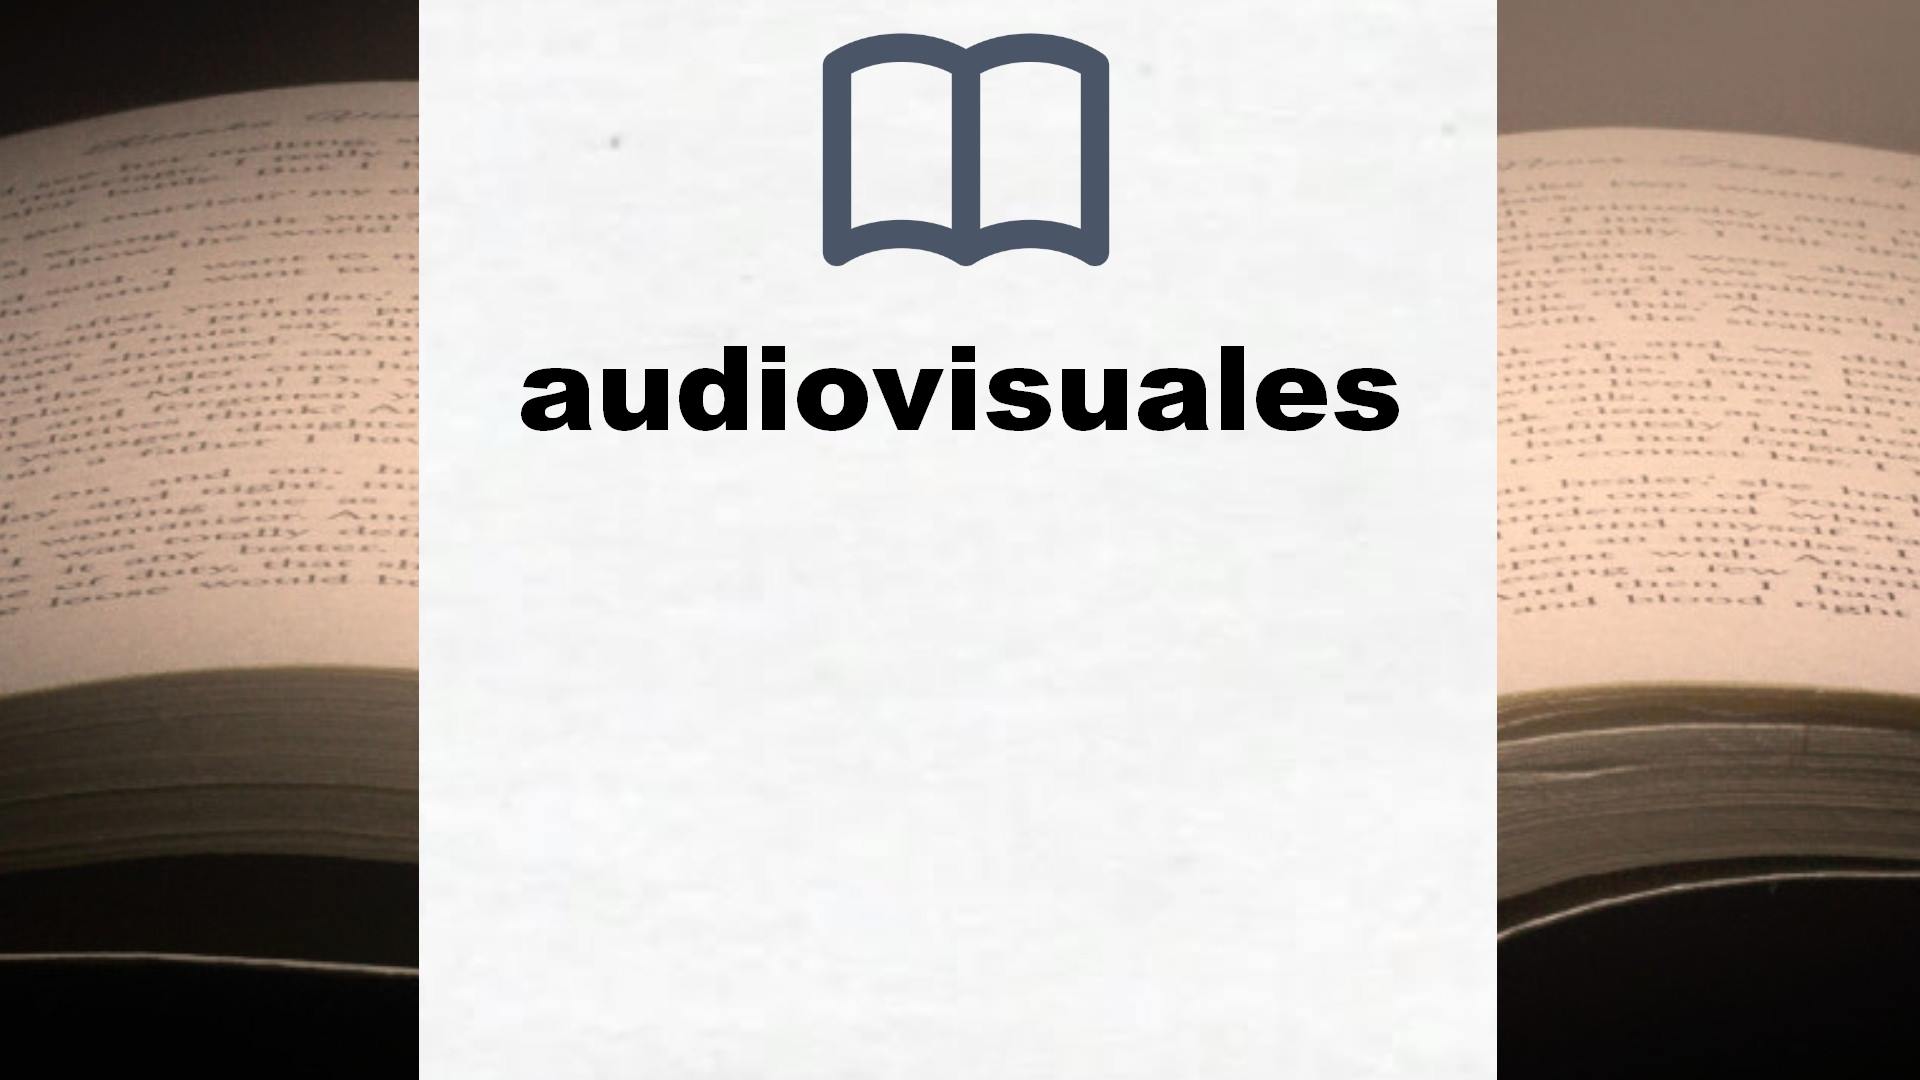 Libros sobre audiovisuales